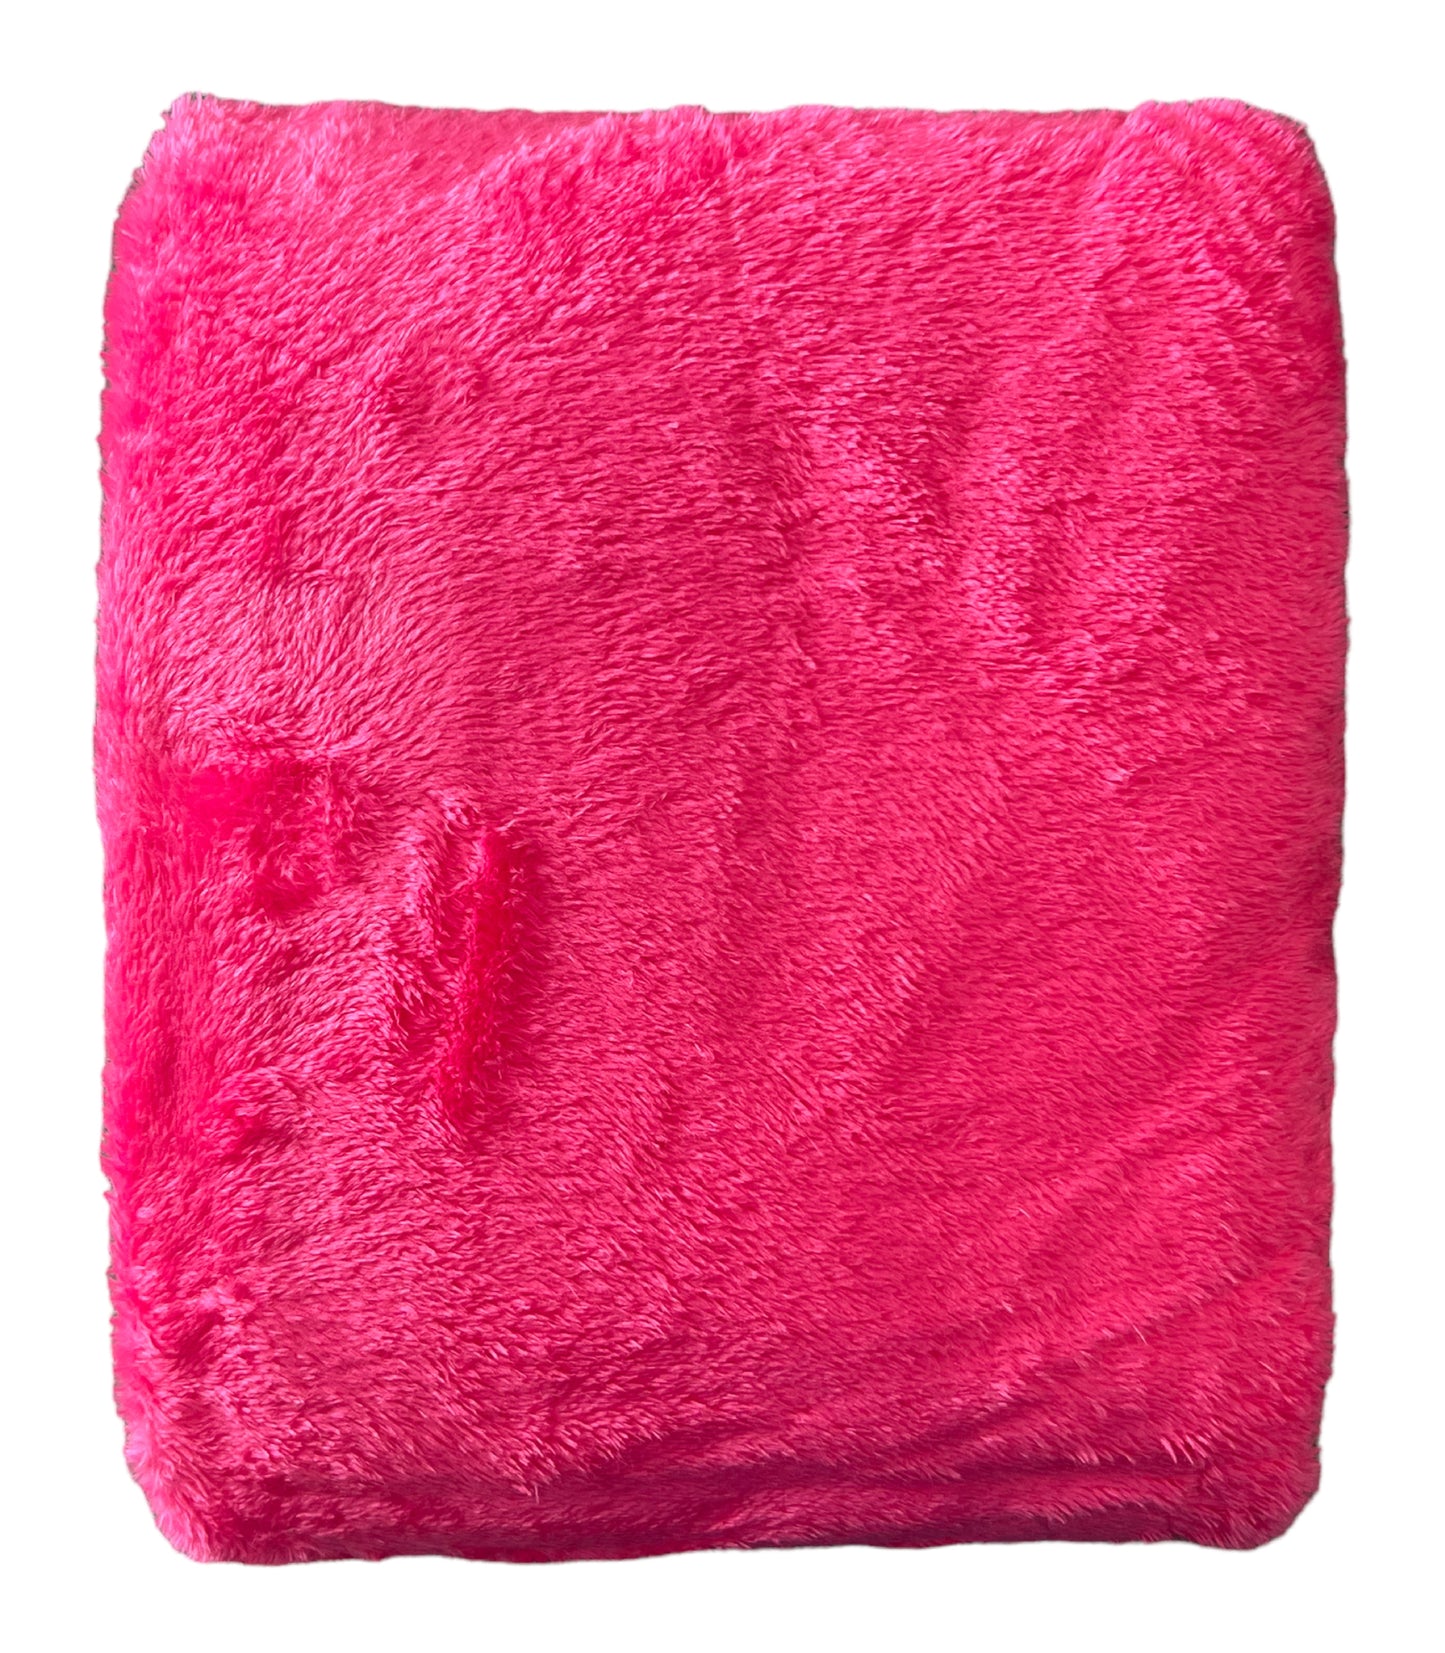 Minky Blanket - Bright (Hot) Pink Minky Fleece Backing #16